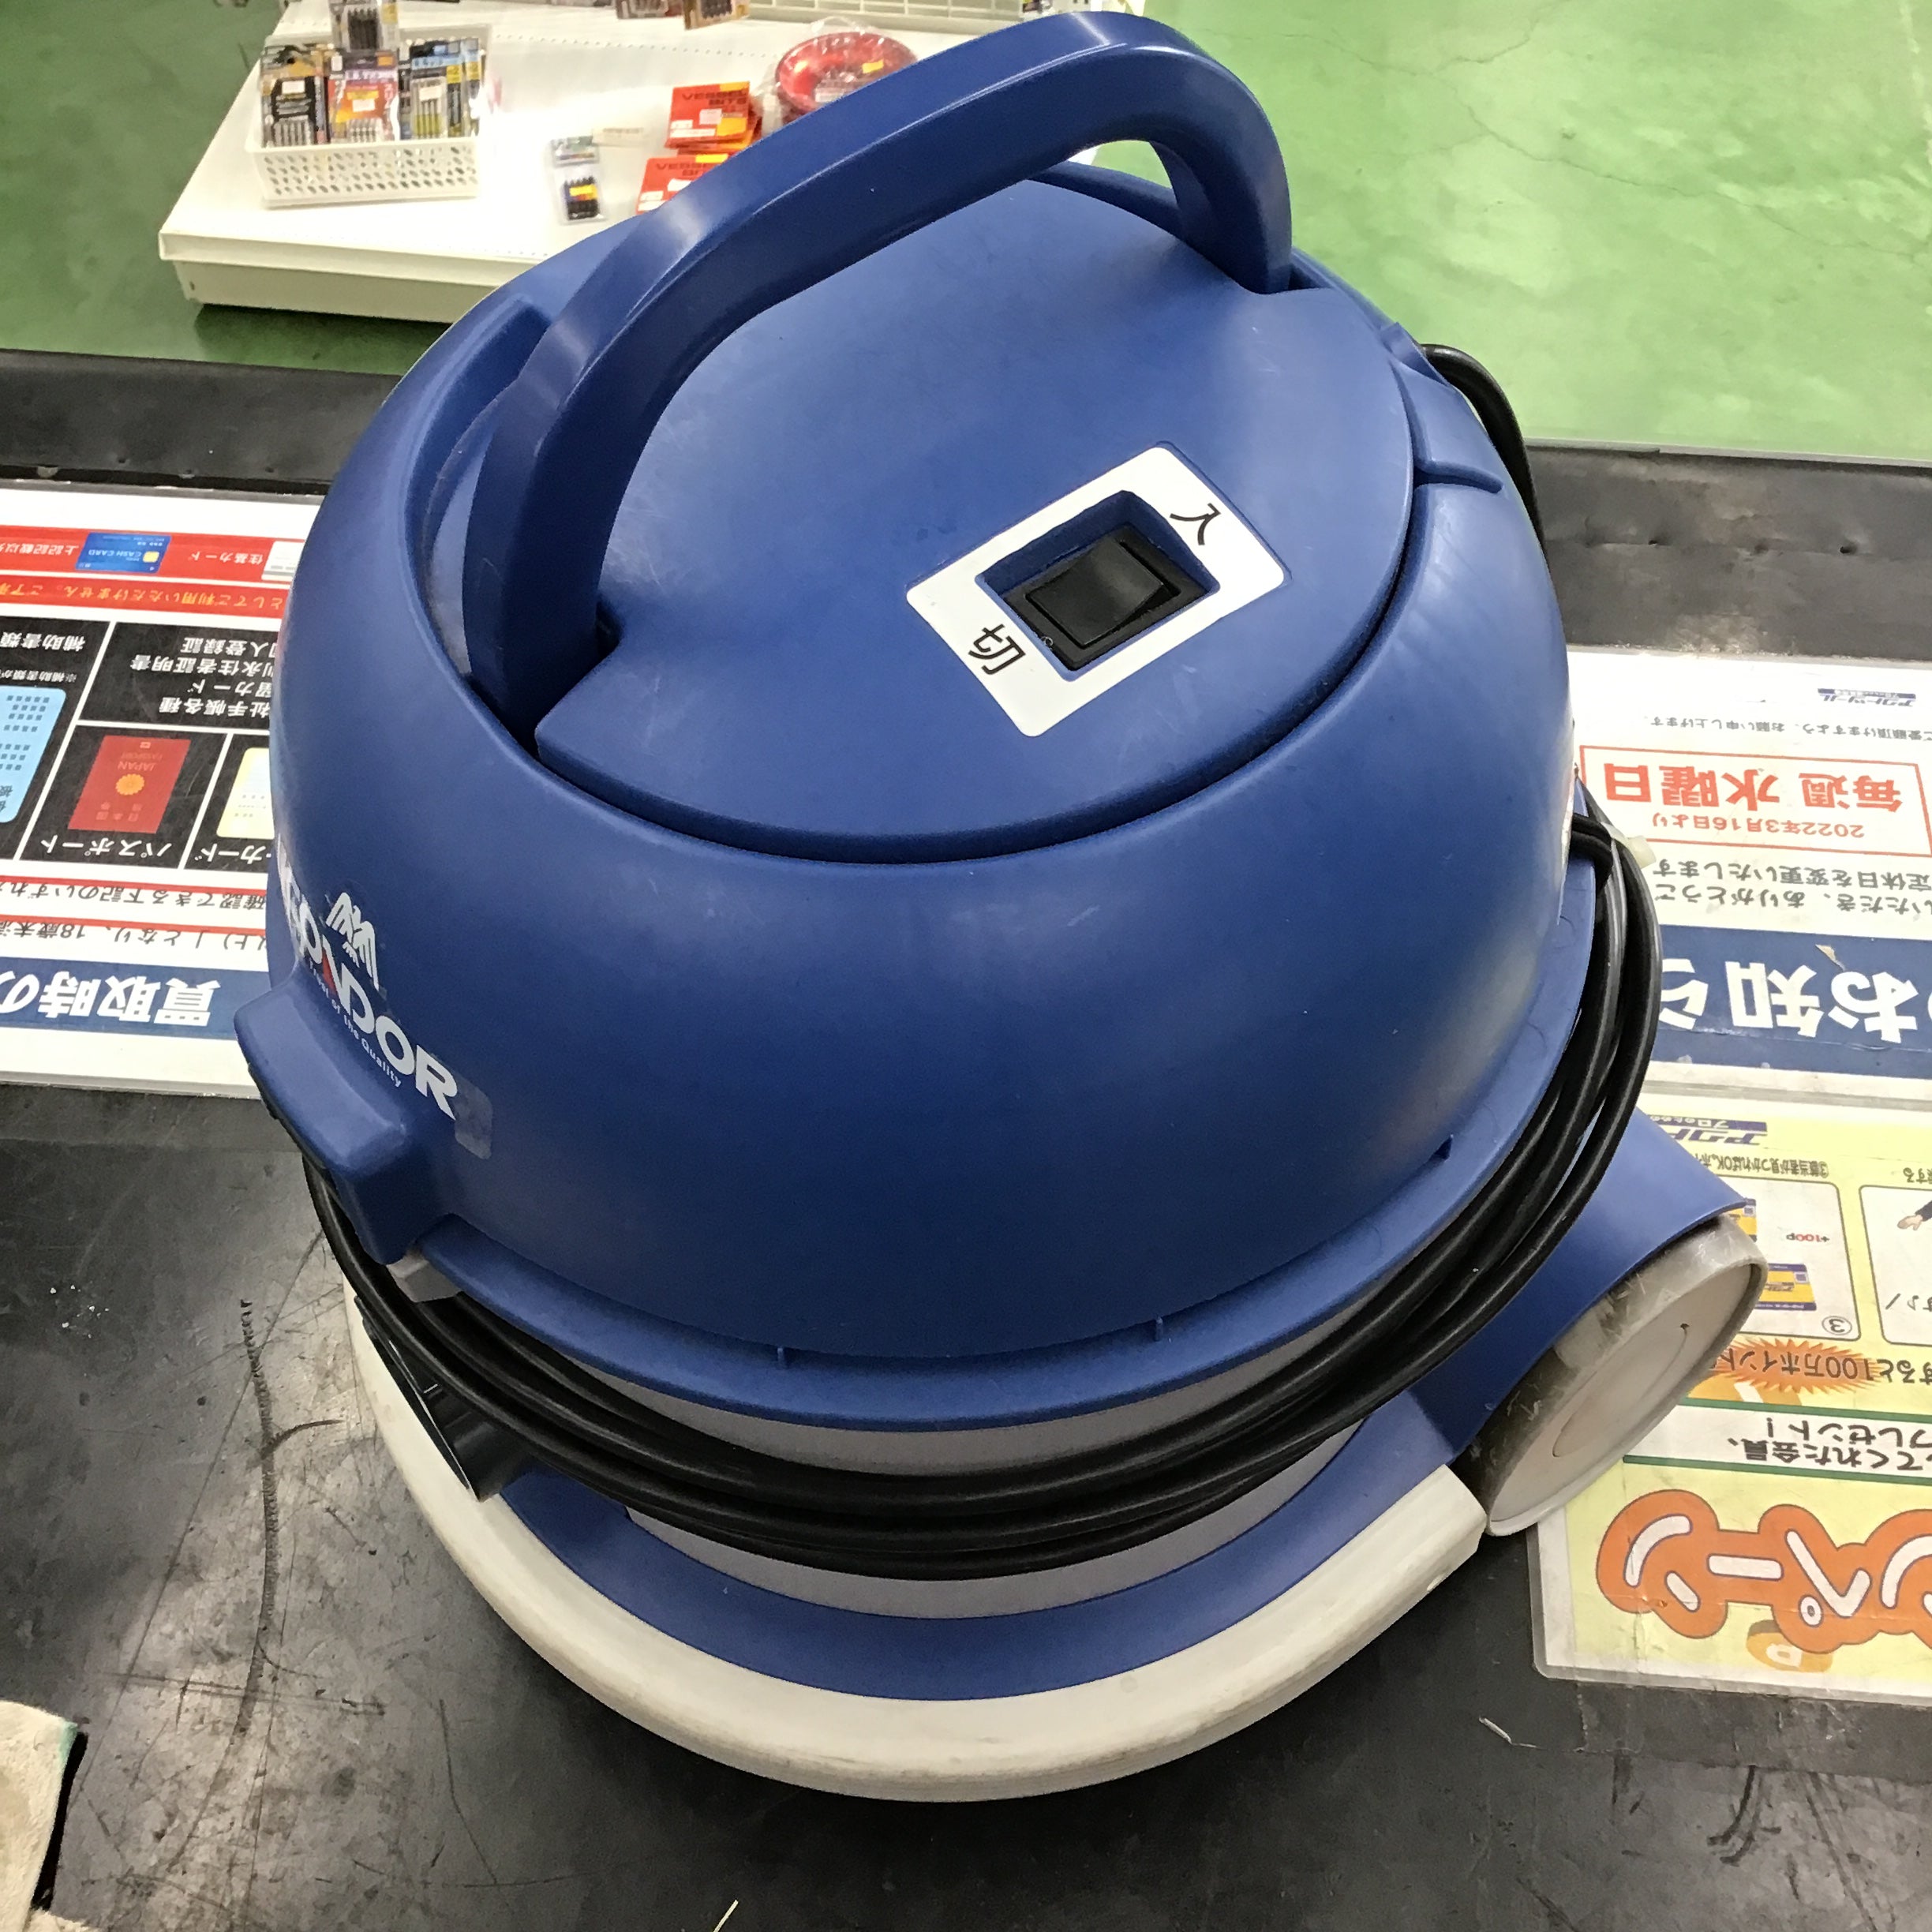 山崎産業 コンドルバキュームクリーナー CVC-301X 【桶川店】 | アクト